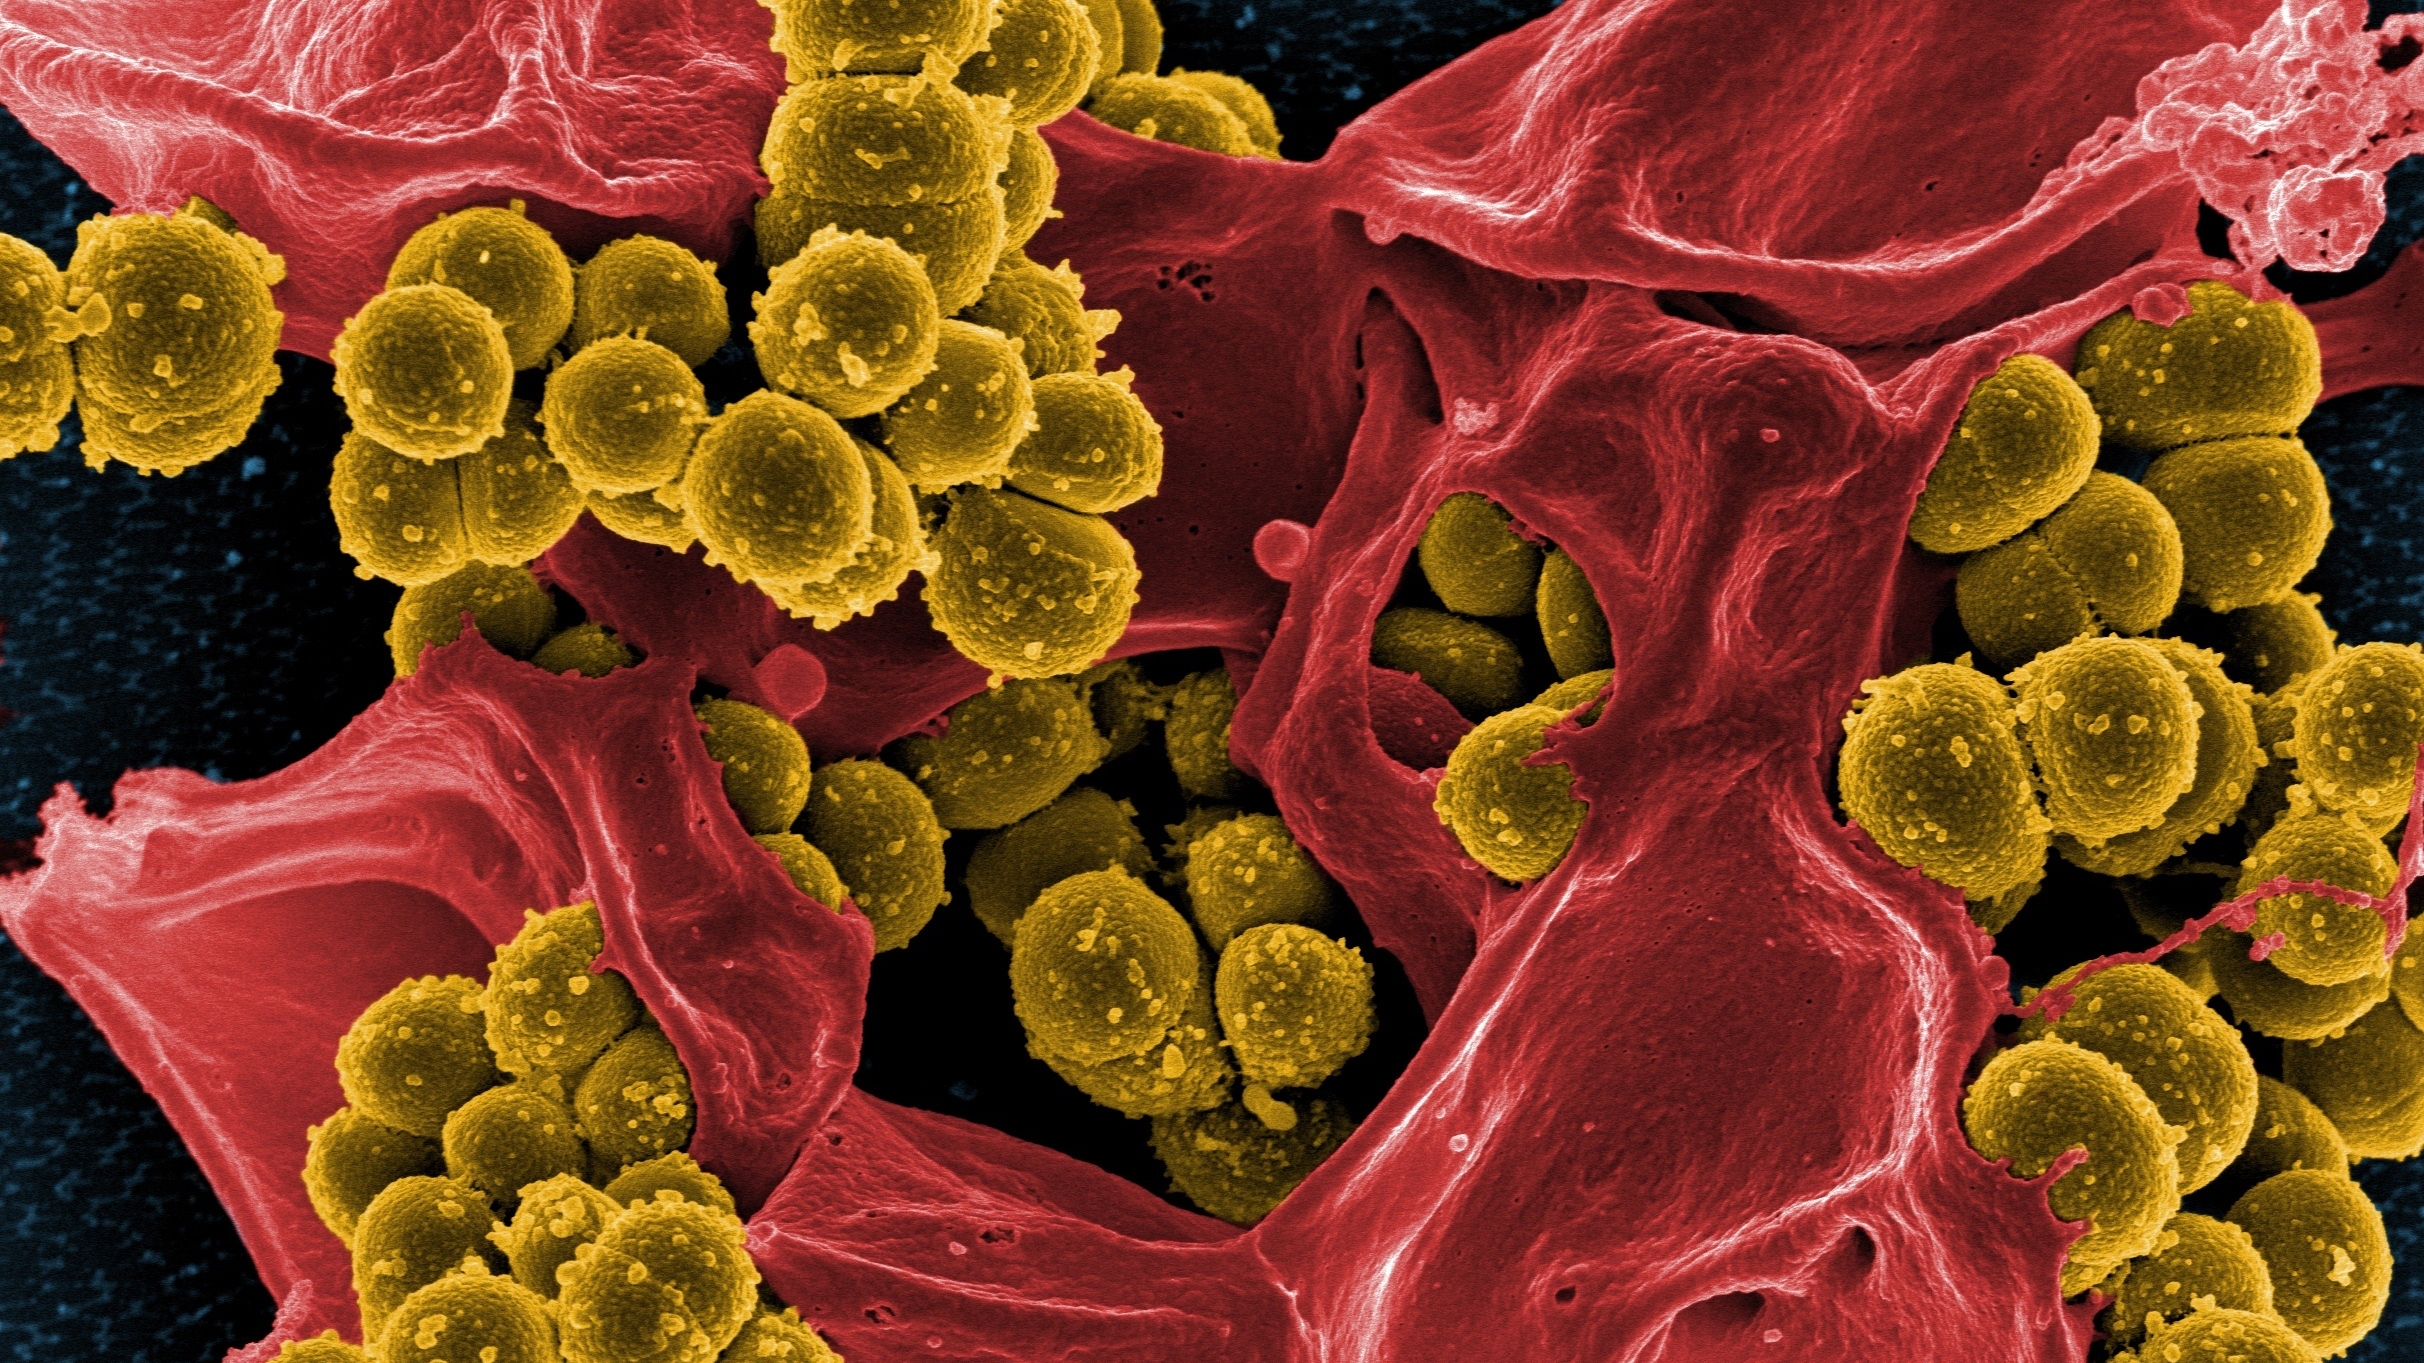 По всему миру бактерии выработали устойчивость к ряду бесконтрольно применяемым антибиотикам